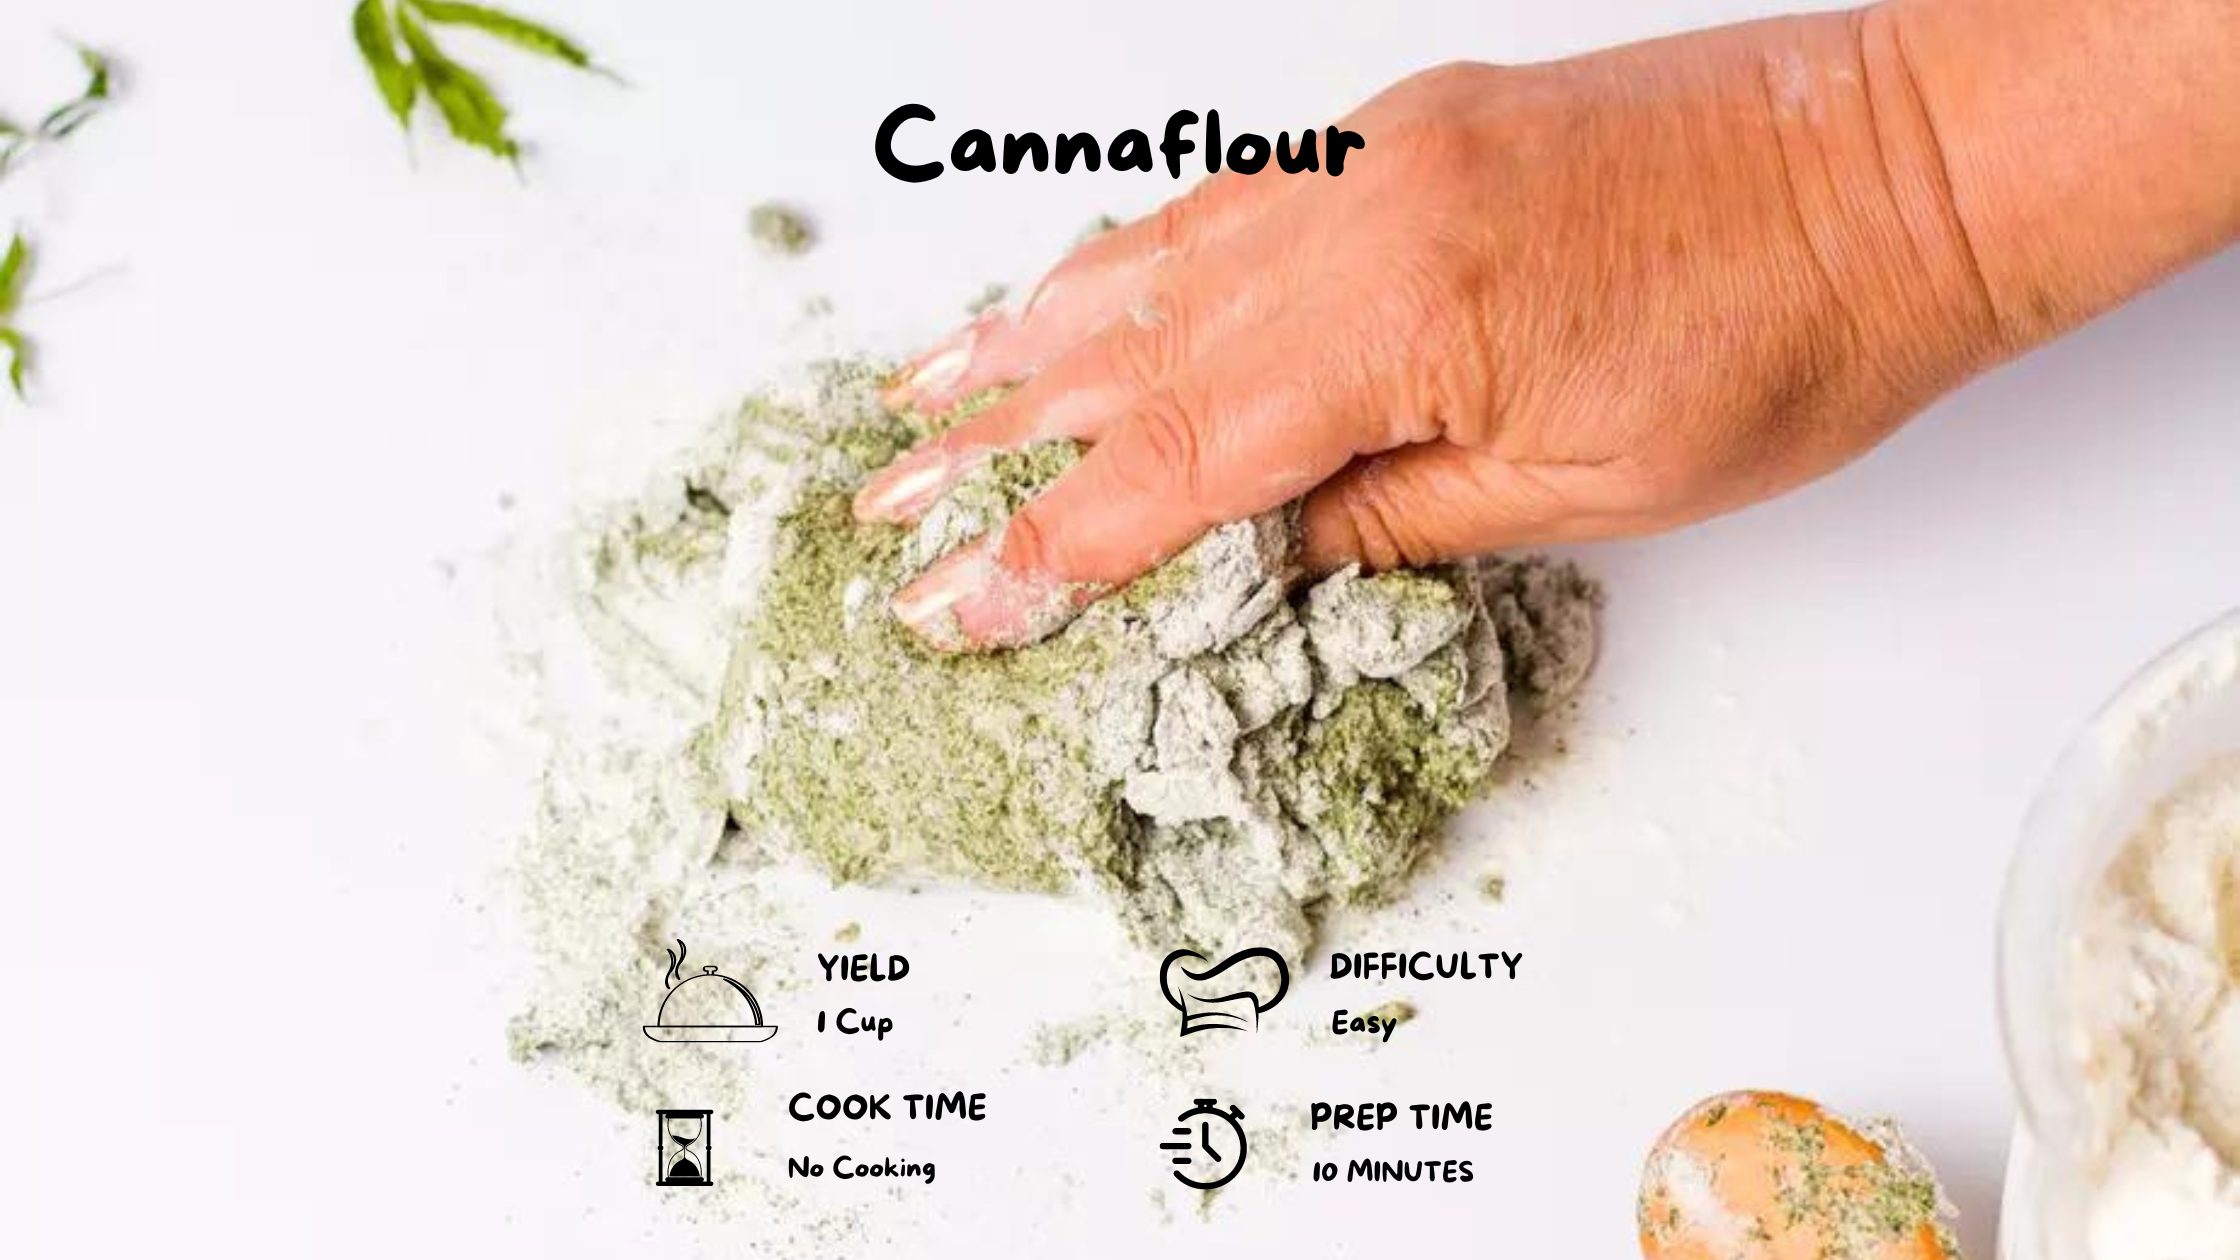 Cannabis and Marijuana Flour or Canna Flour